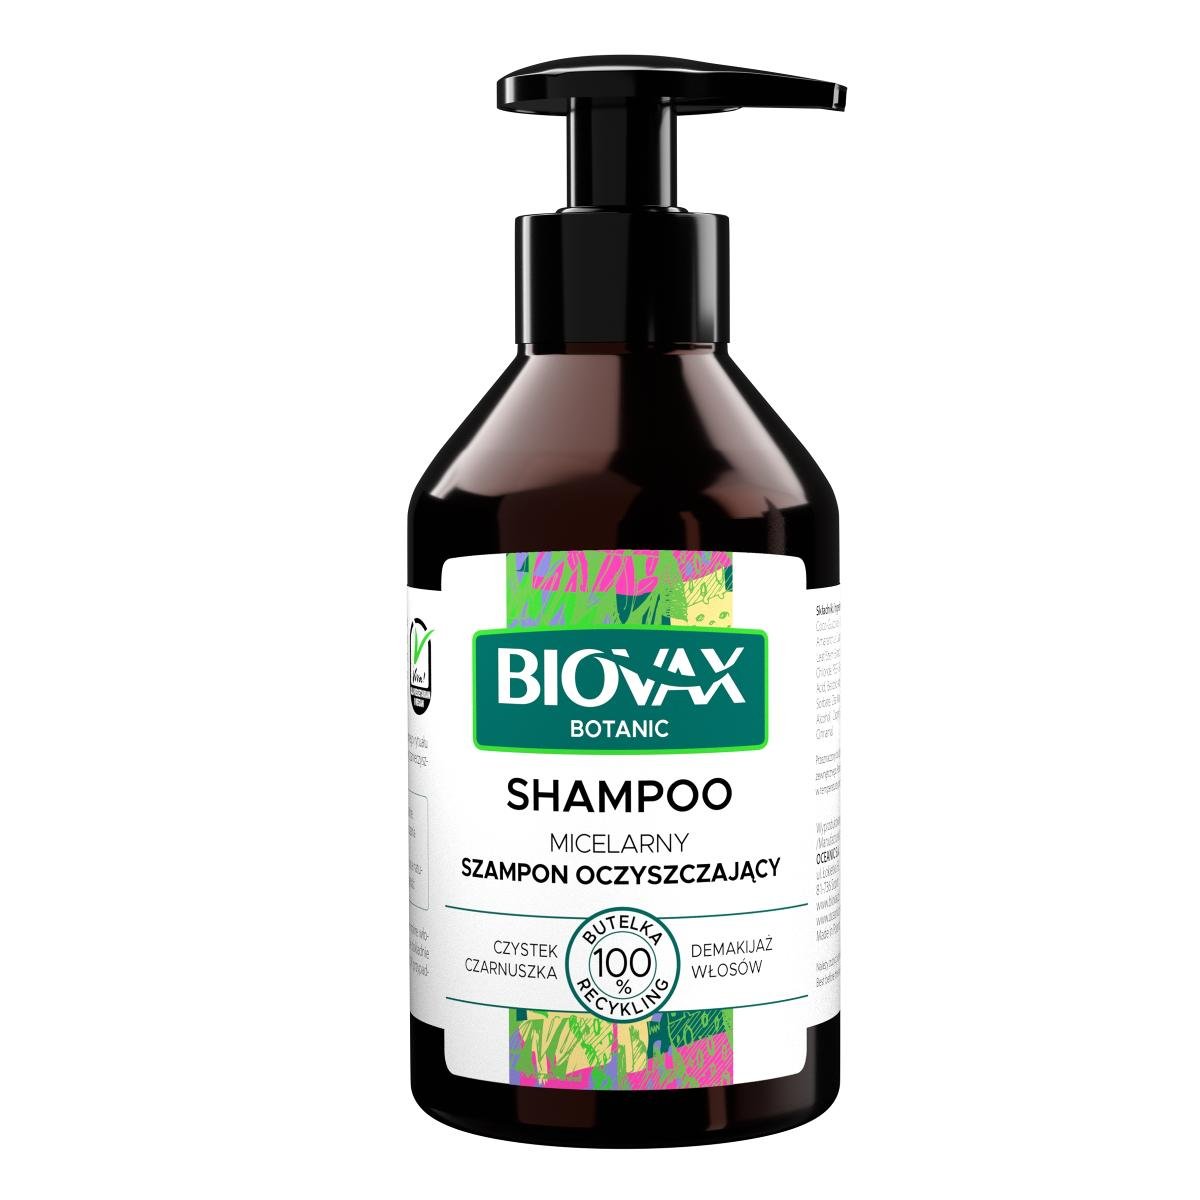 l biotica biovax botanic szampon micelarny czystek i czarnuszka